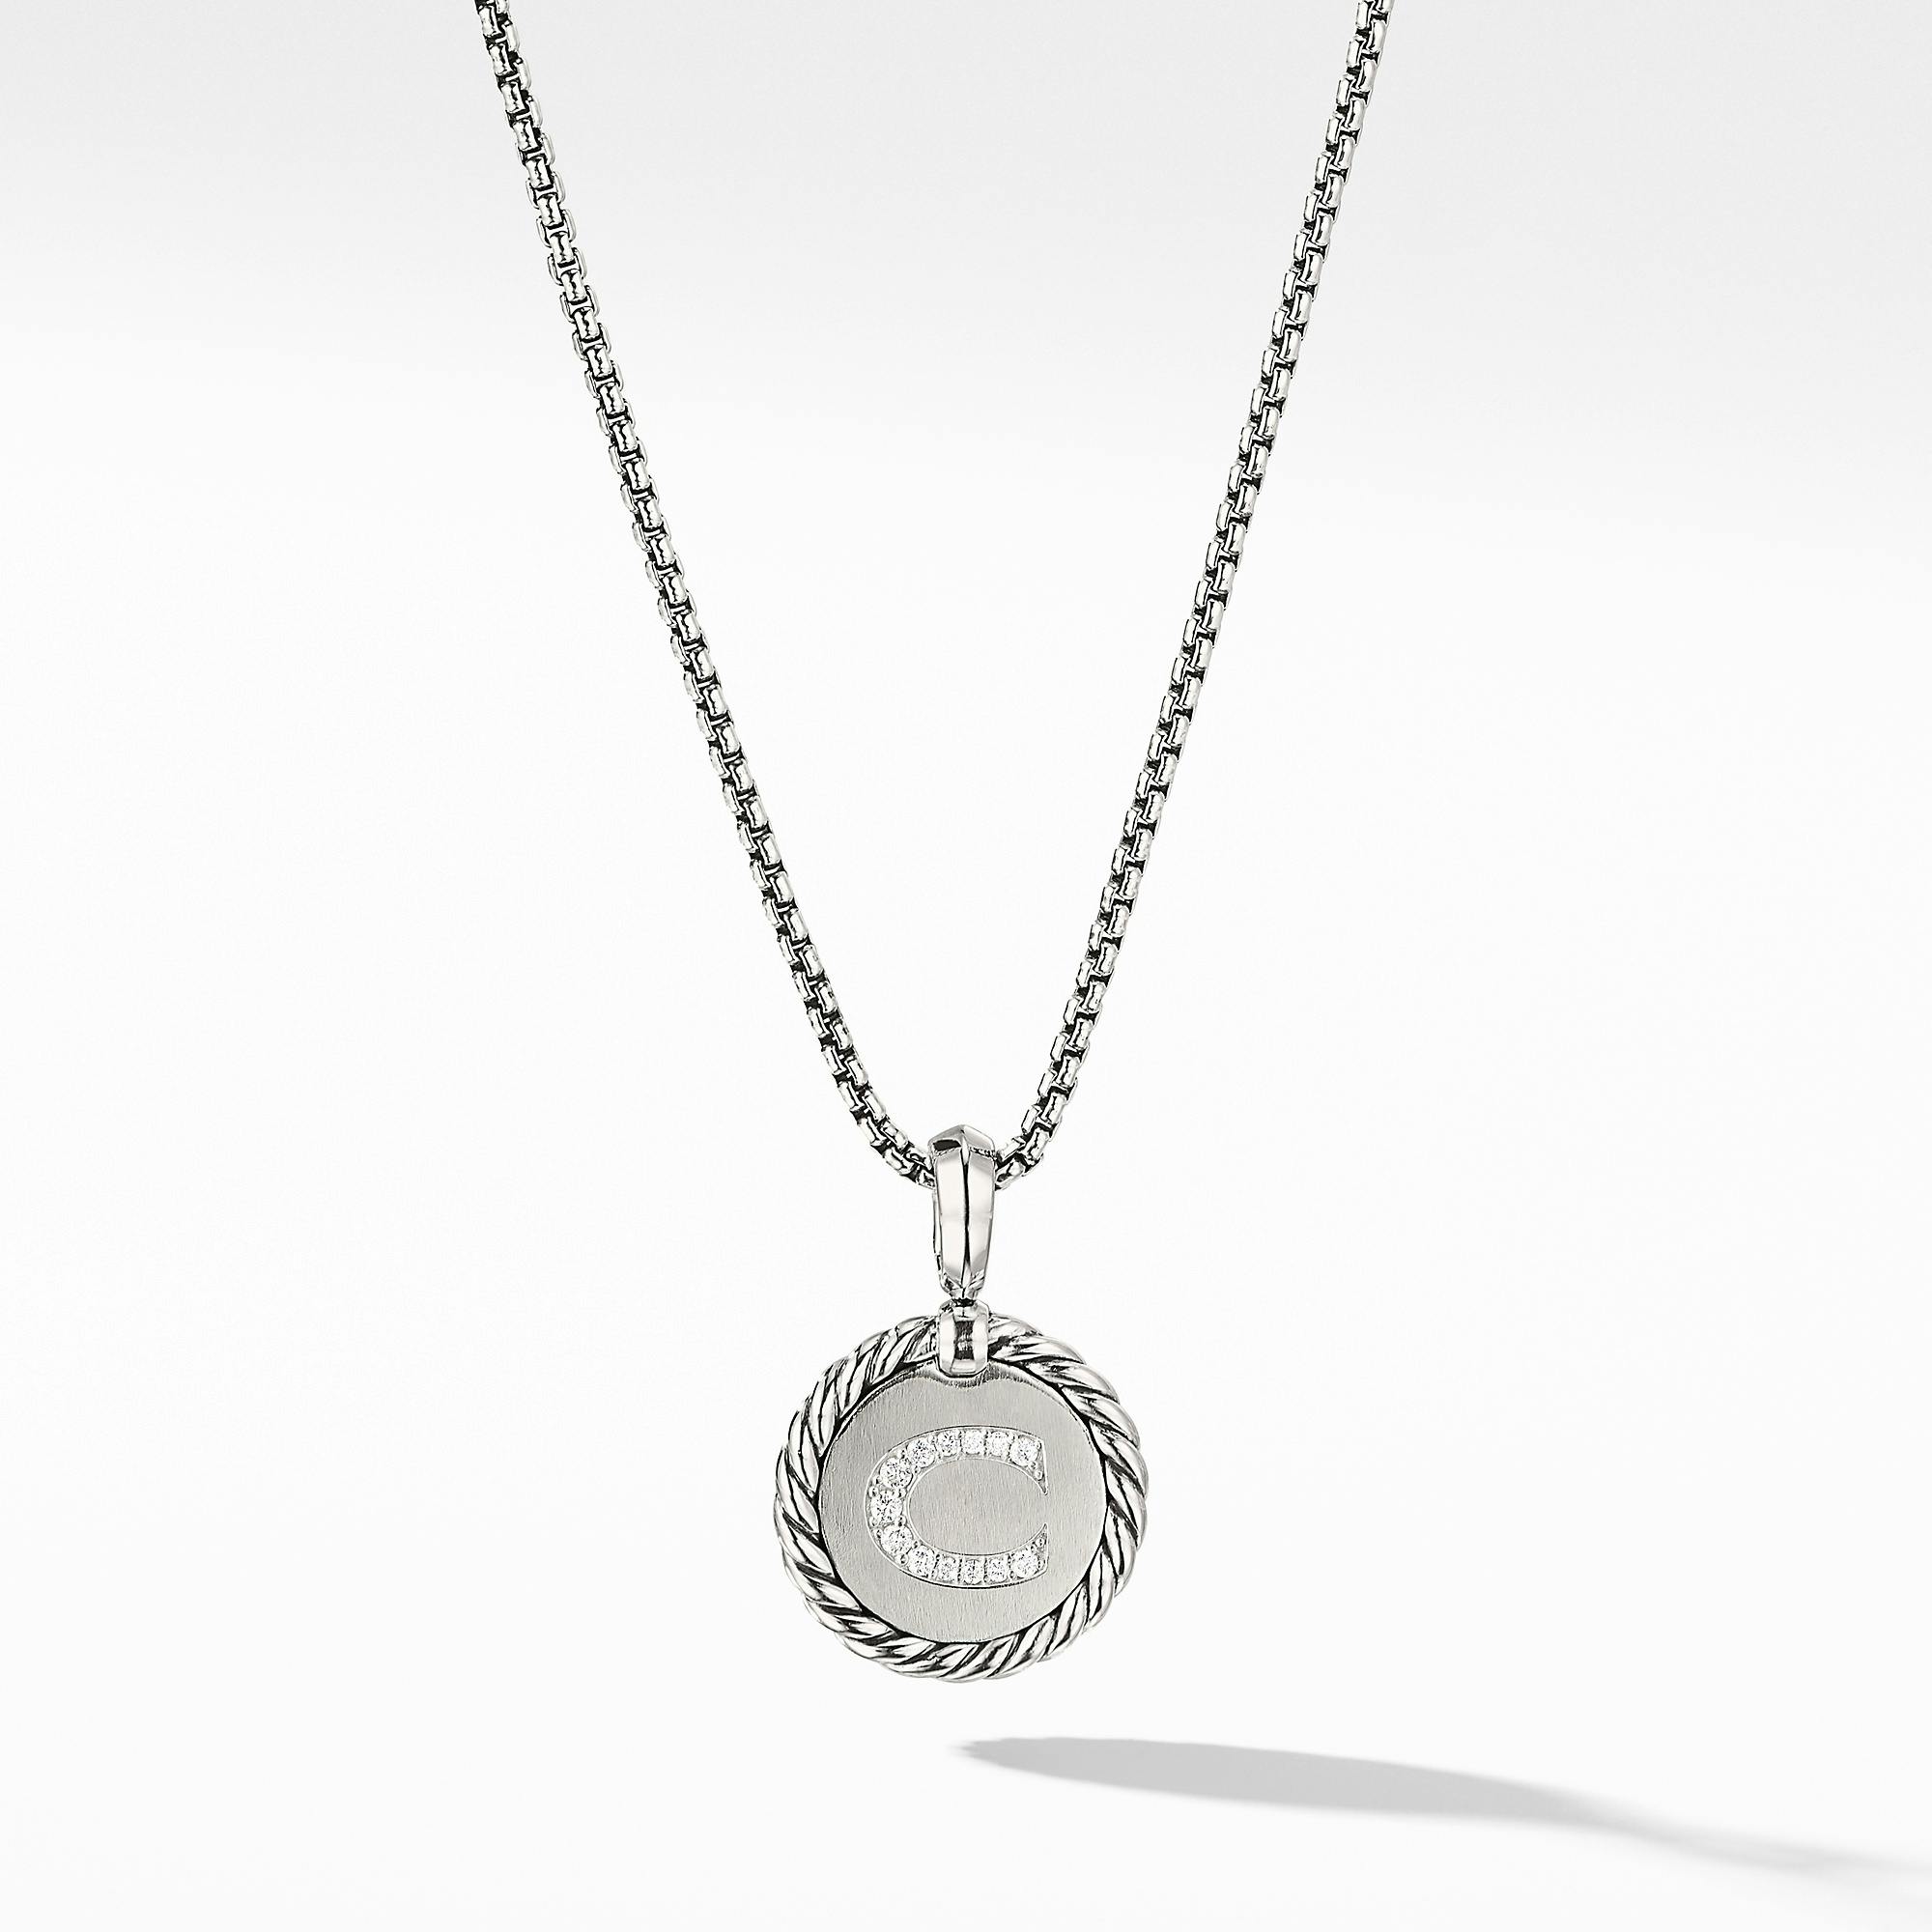 David Yurman "C" initial Charm Necklace with Diamonds